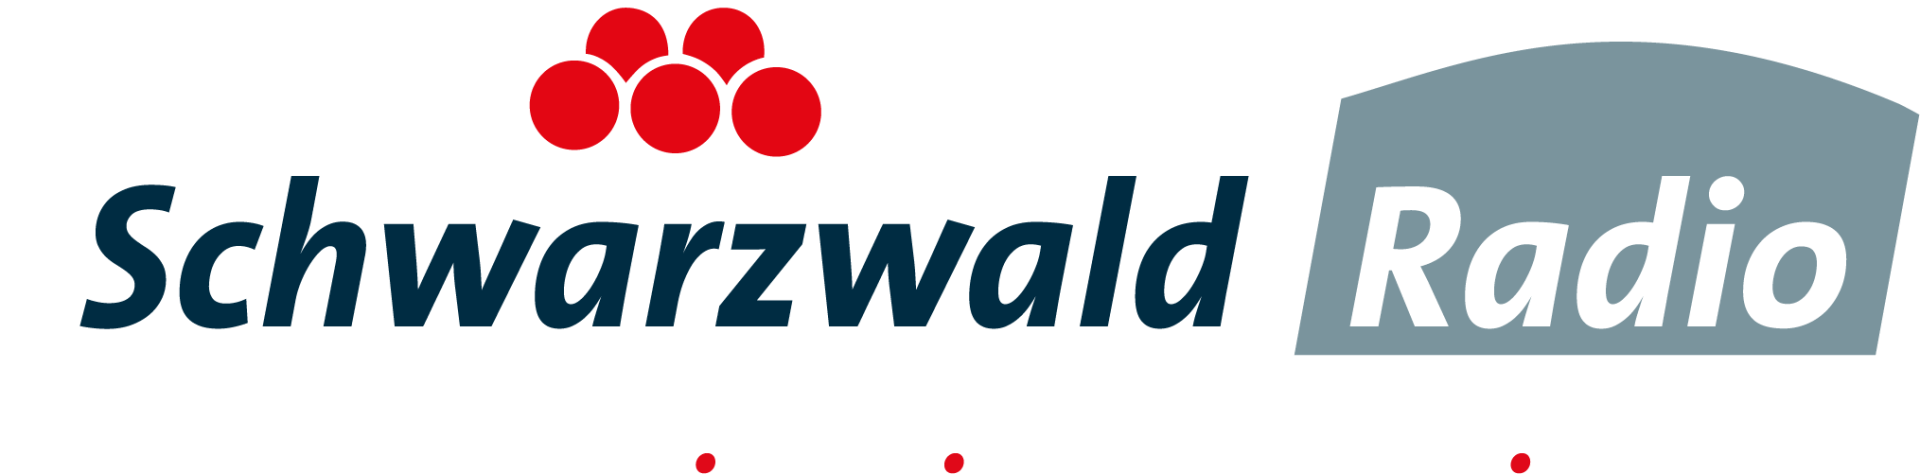 Logo Schwarzwaldradio negativ